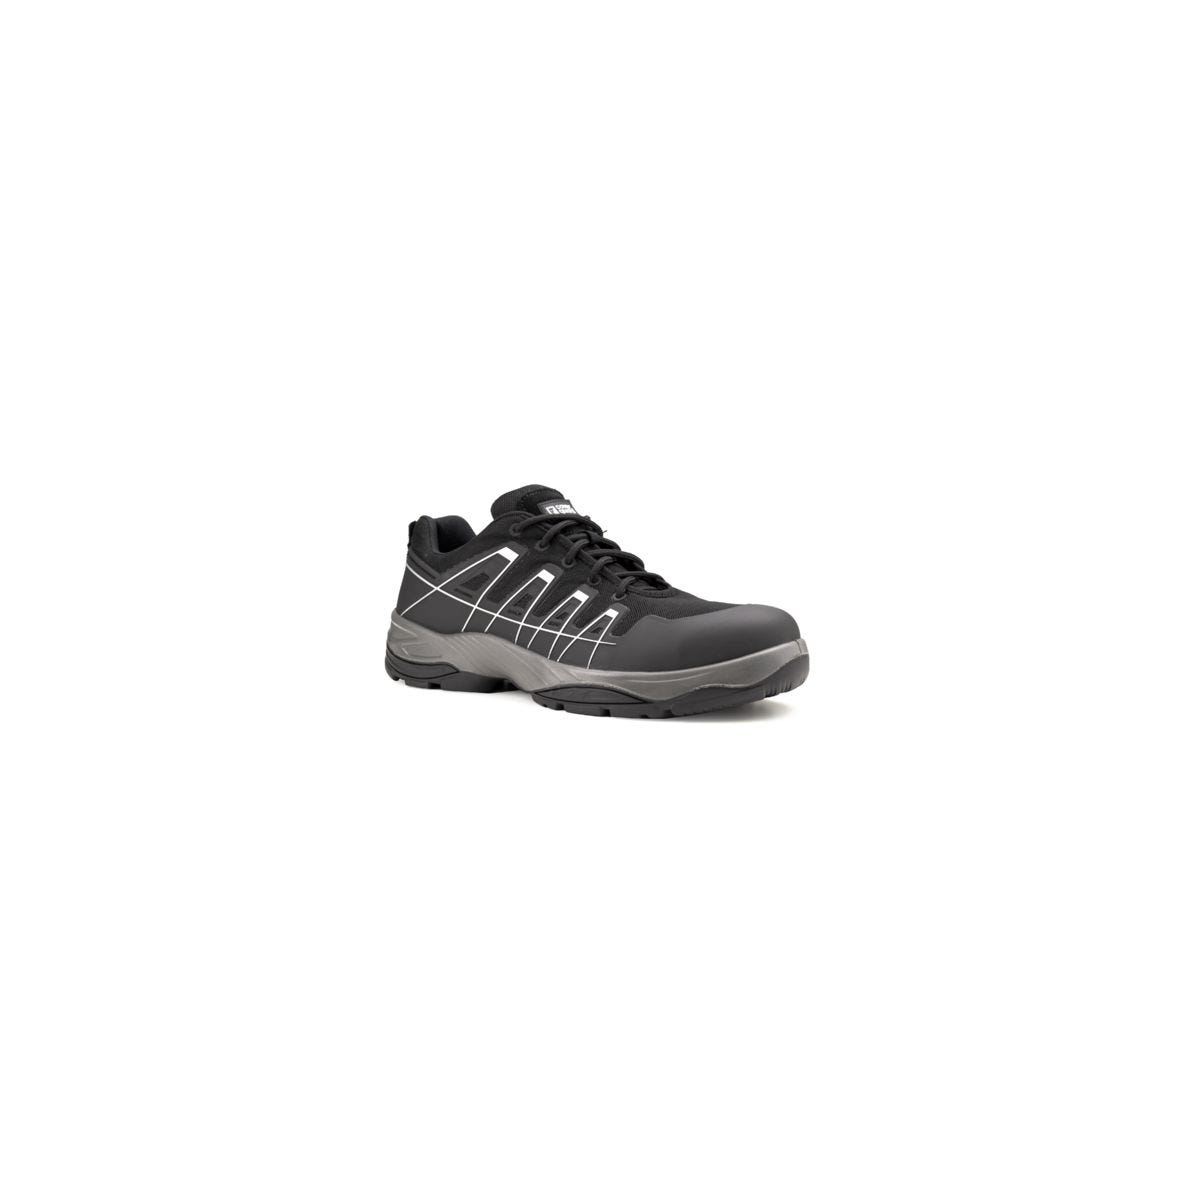 Chaussures de sécurité SCHORL S3 Basse Noir - COVERGUARD - Taille 40 0